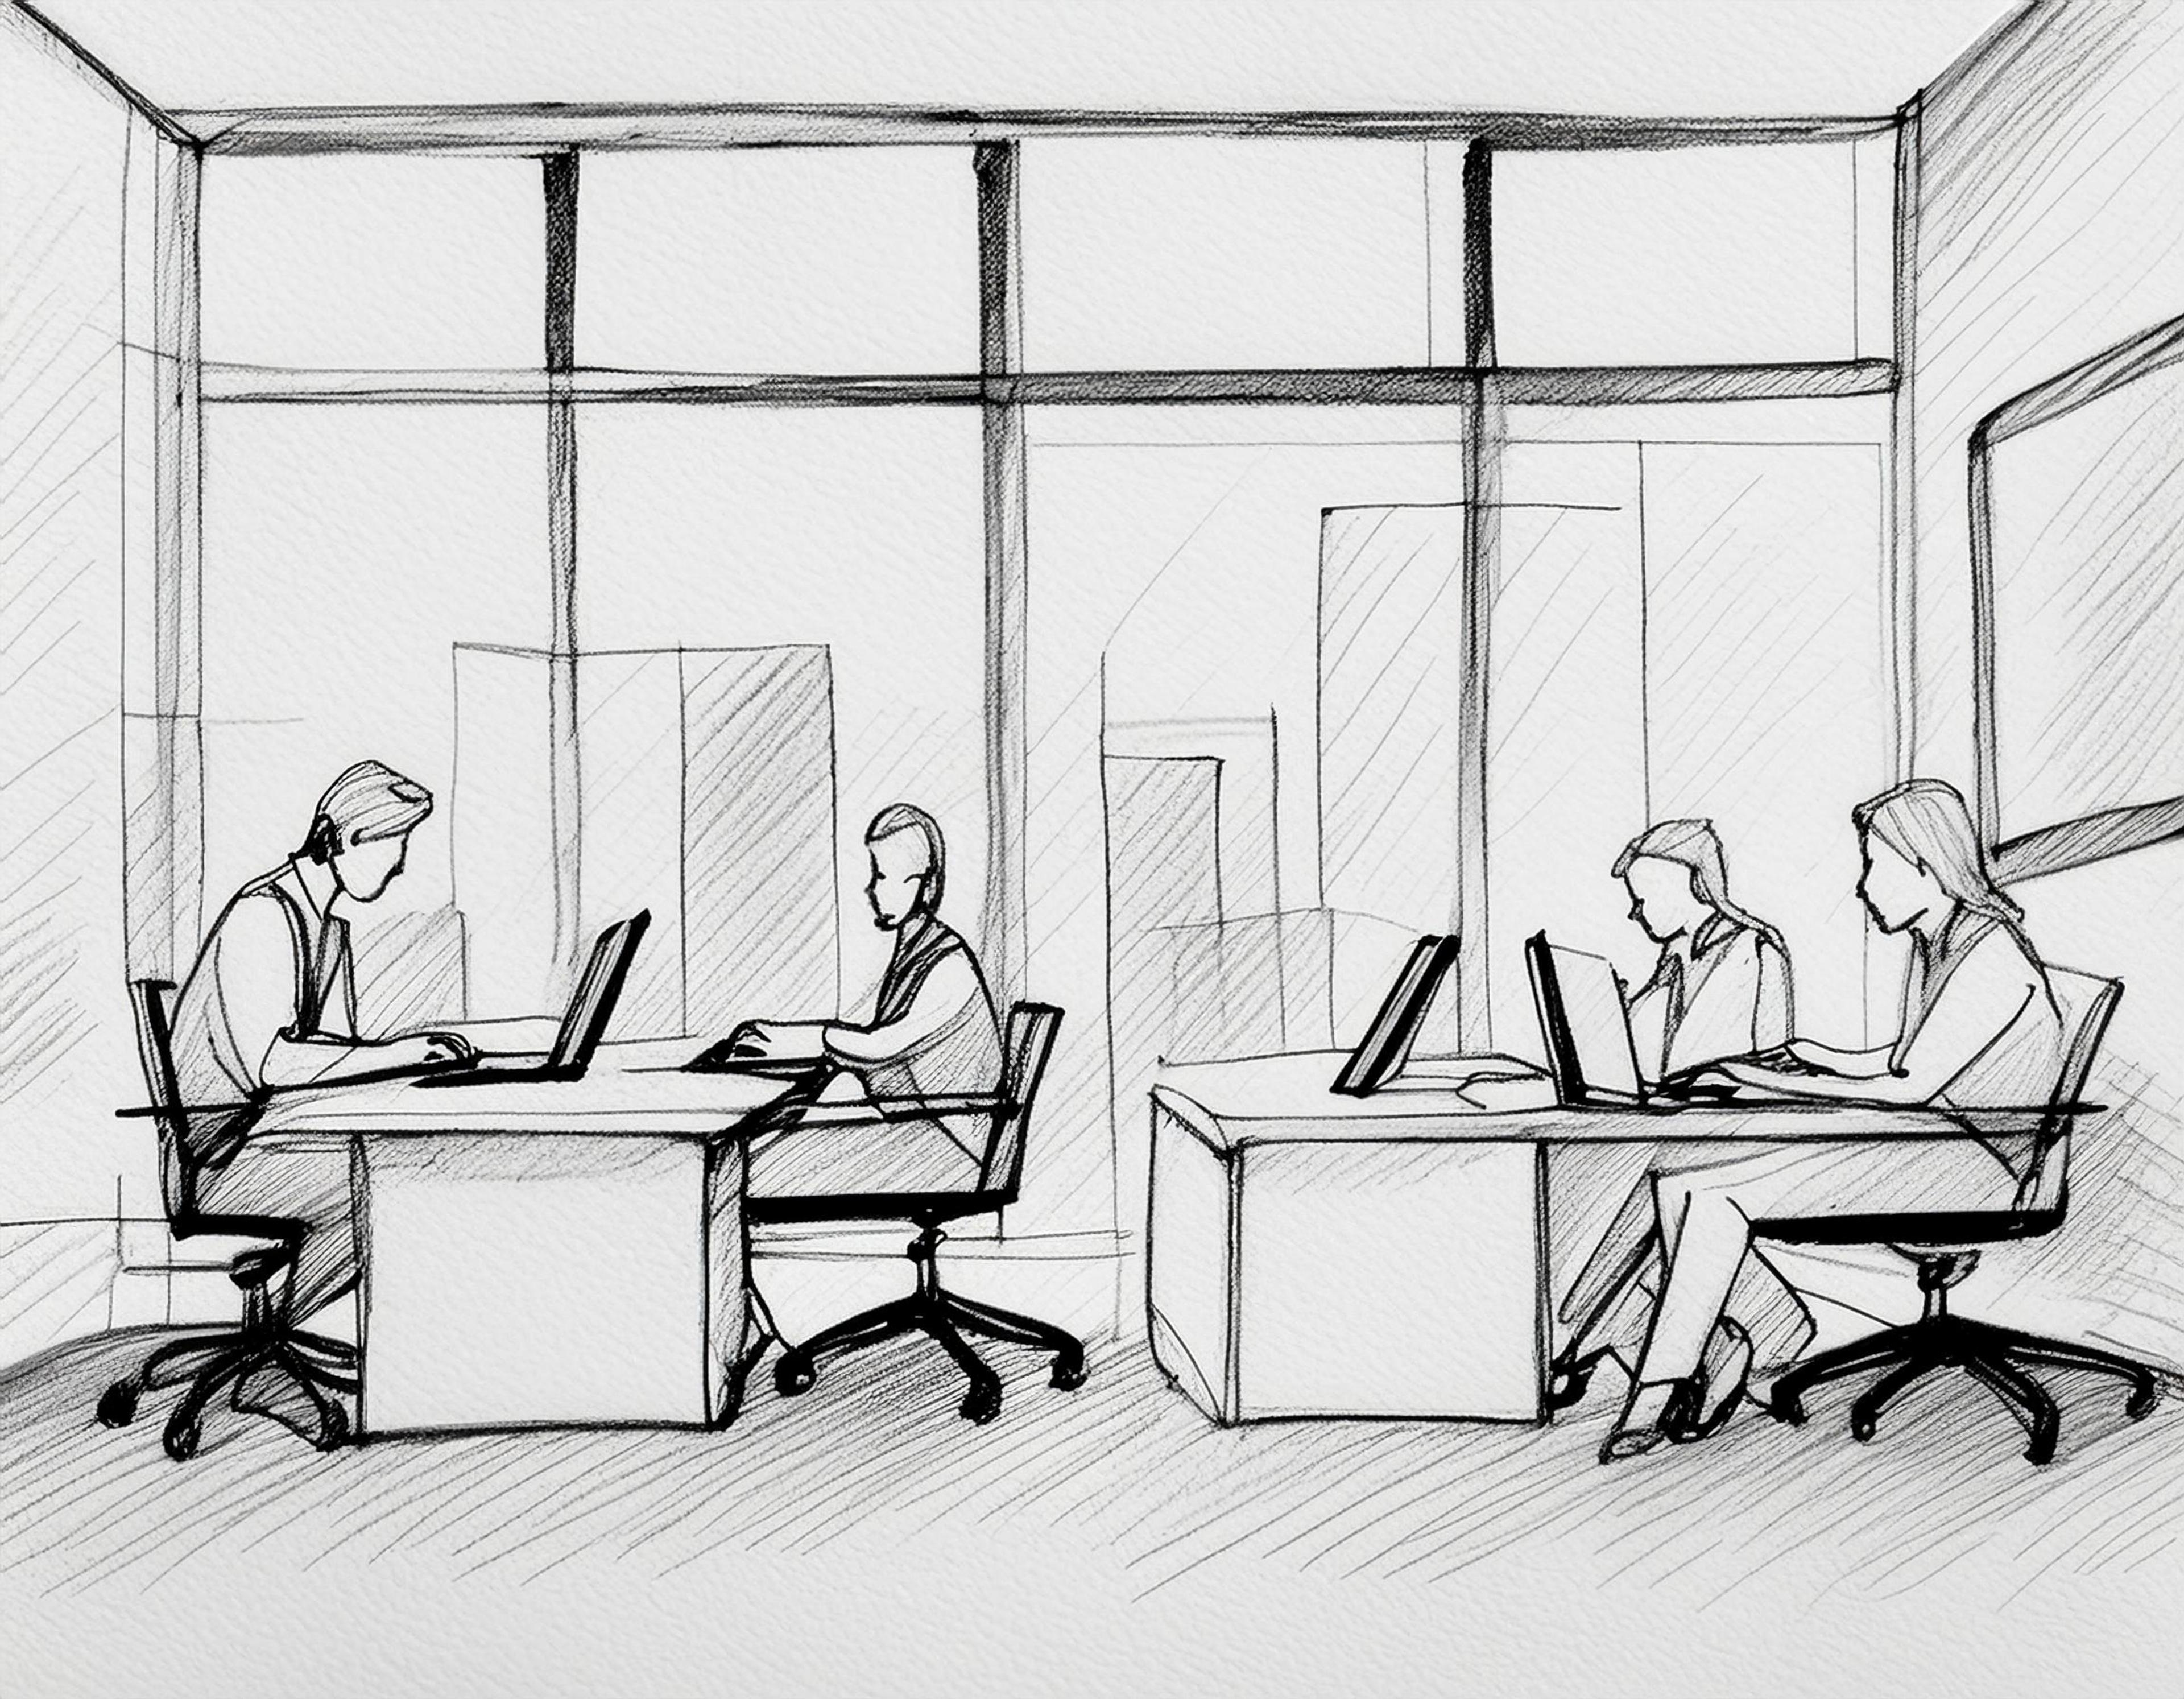 Firefly generert bilde av en gruppe ansatte som jobber på et kontor